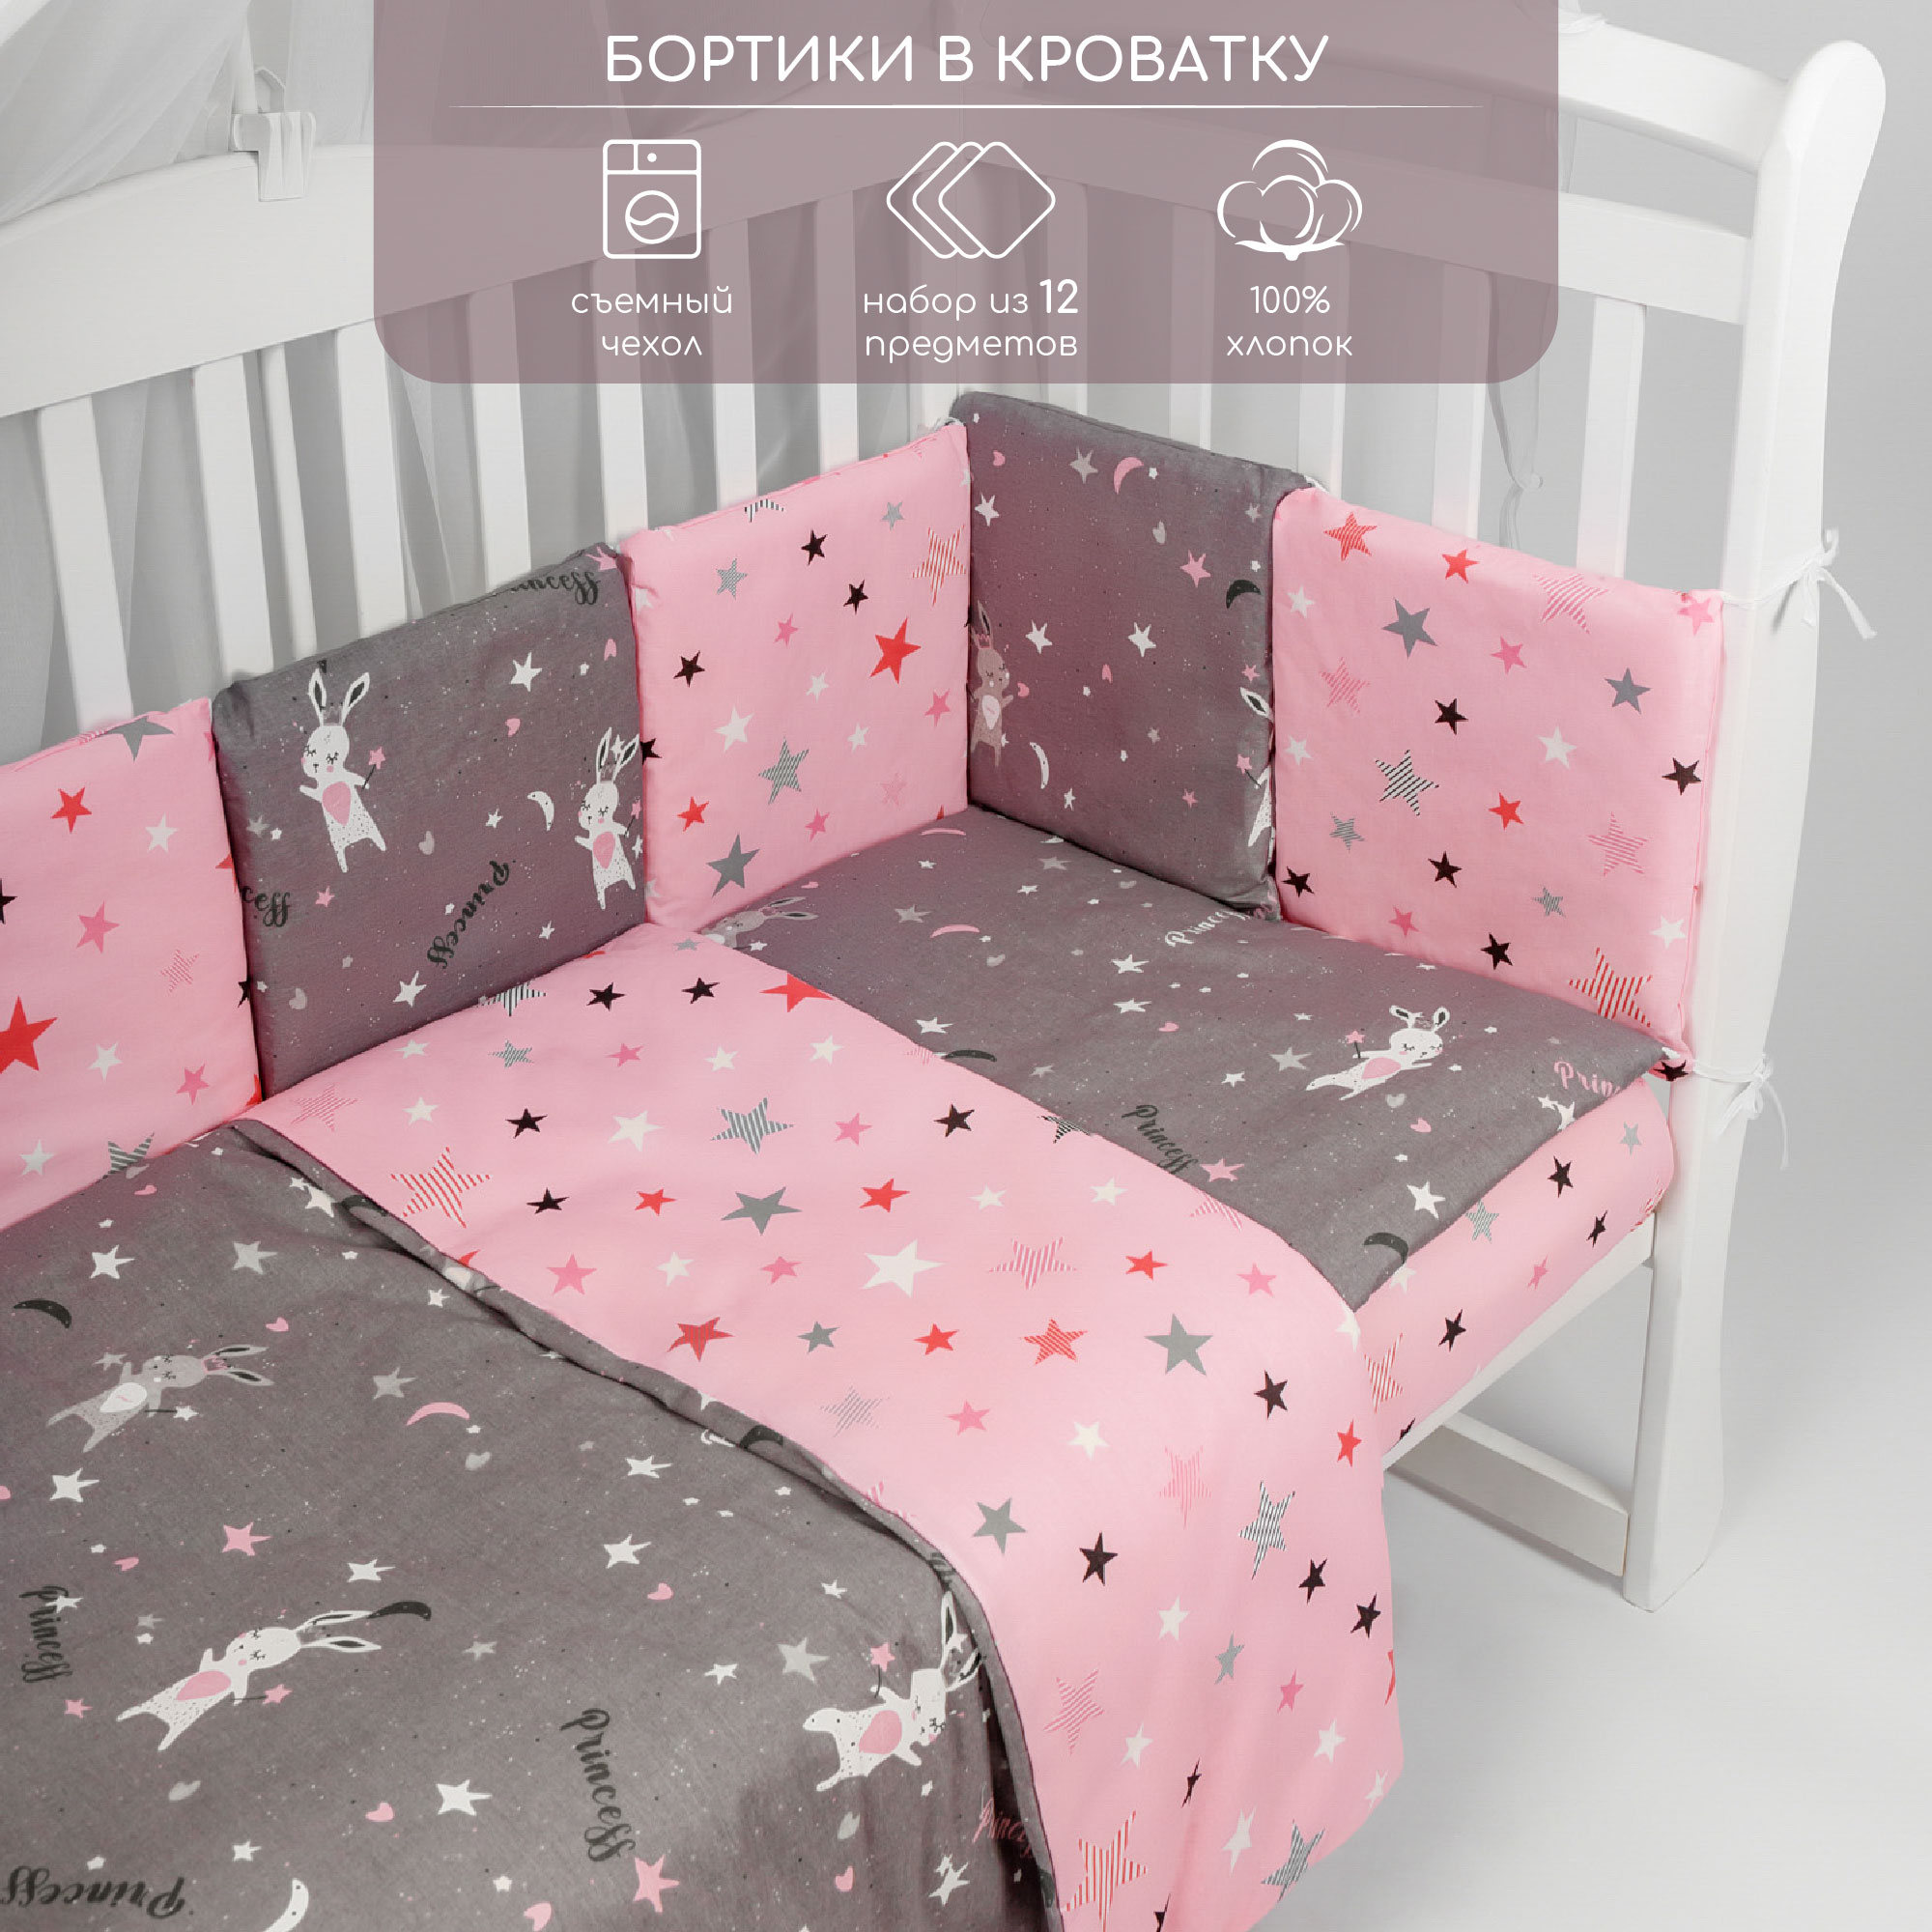 Бортик в кроватку AmaroBaby 12 предметов Princess серый/розовый